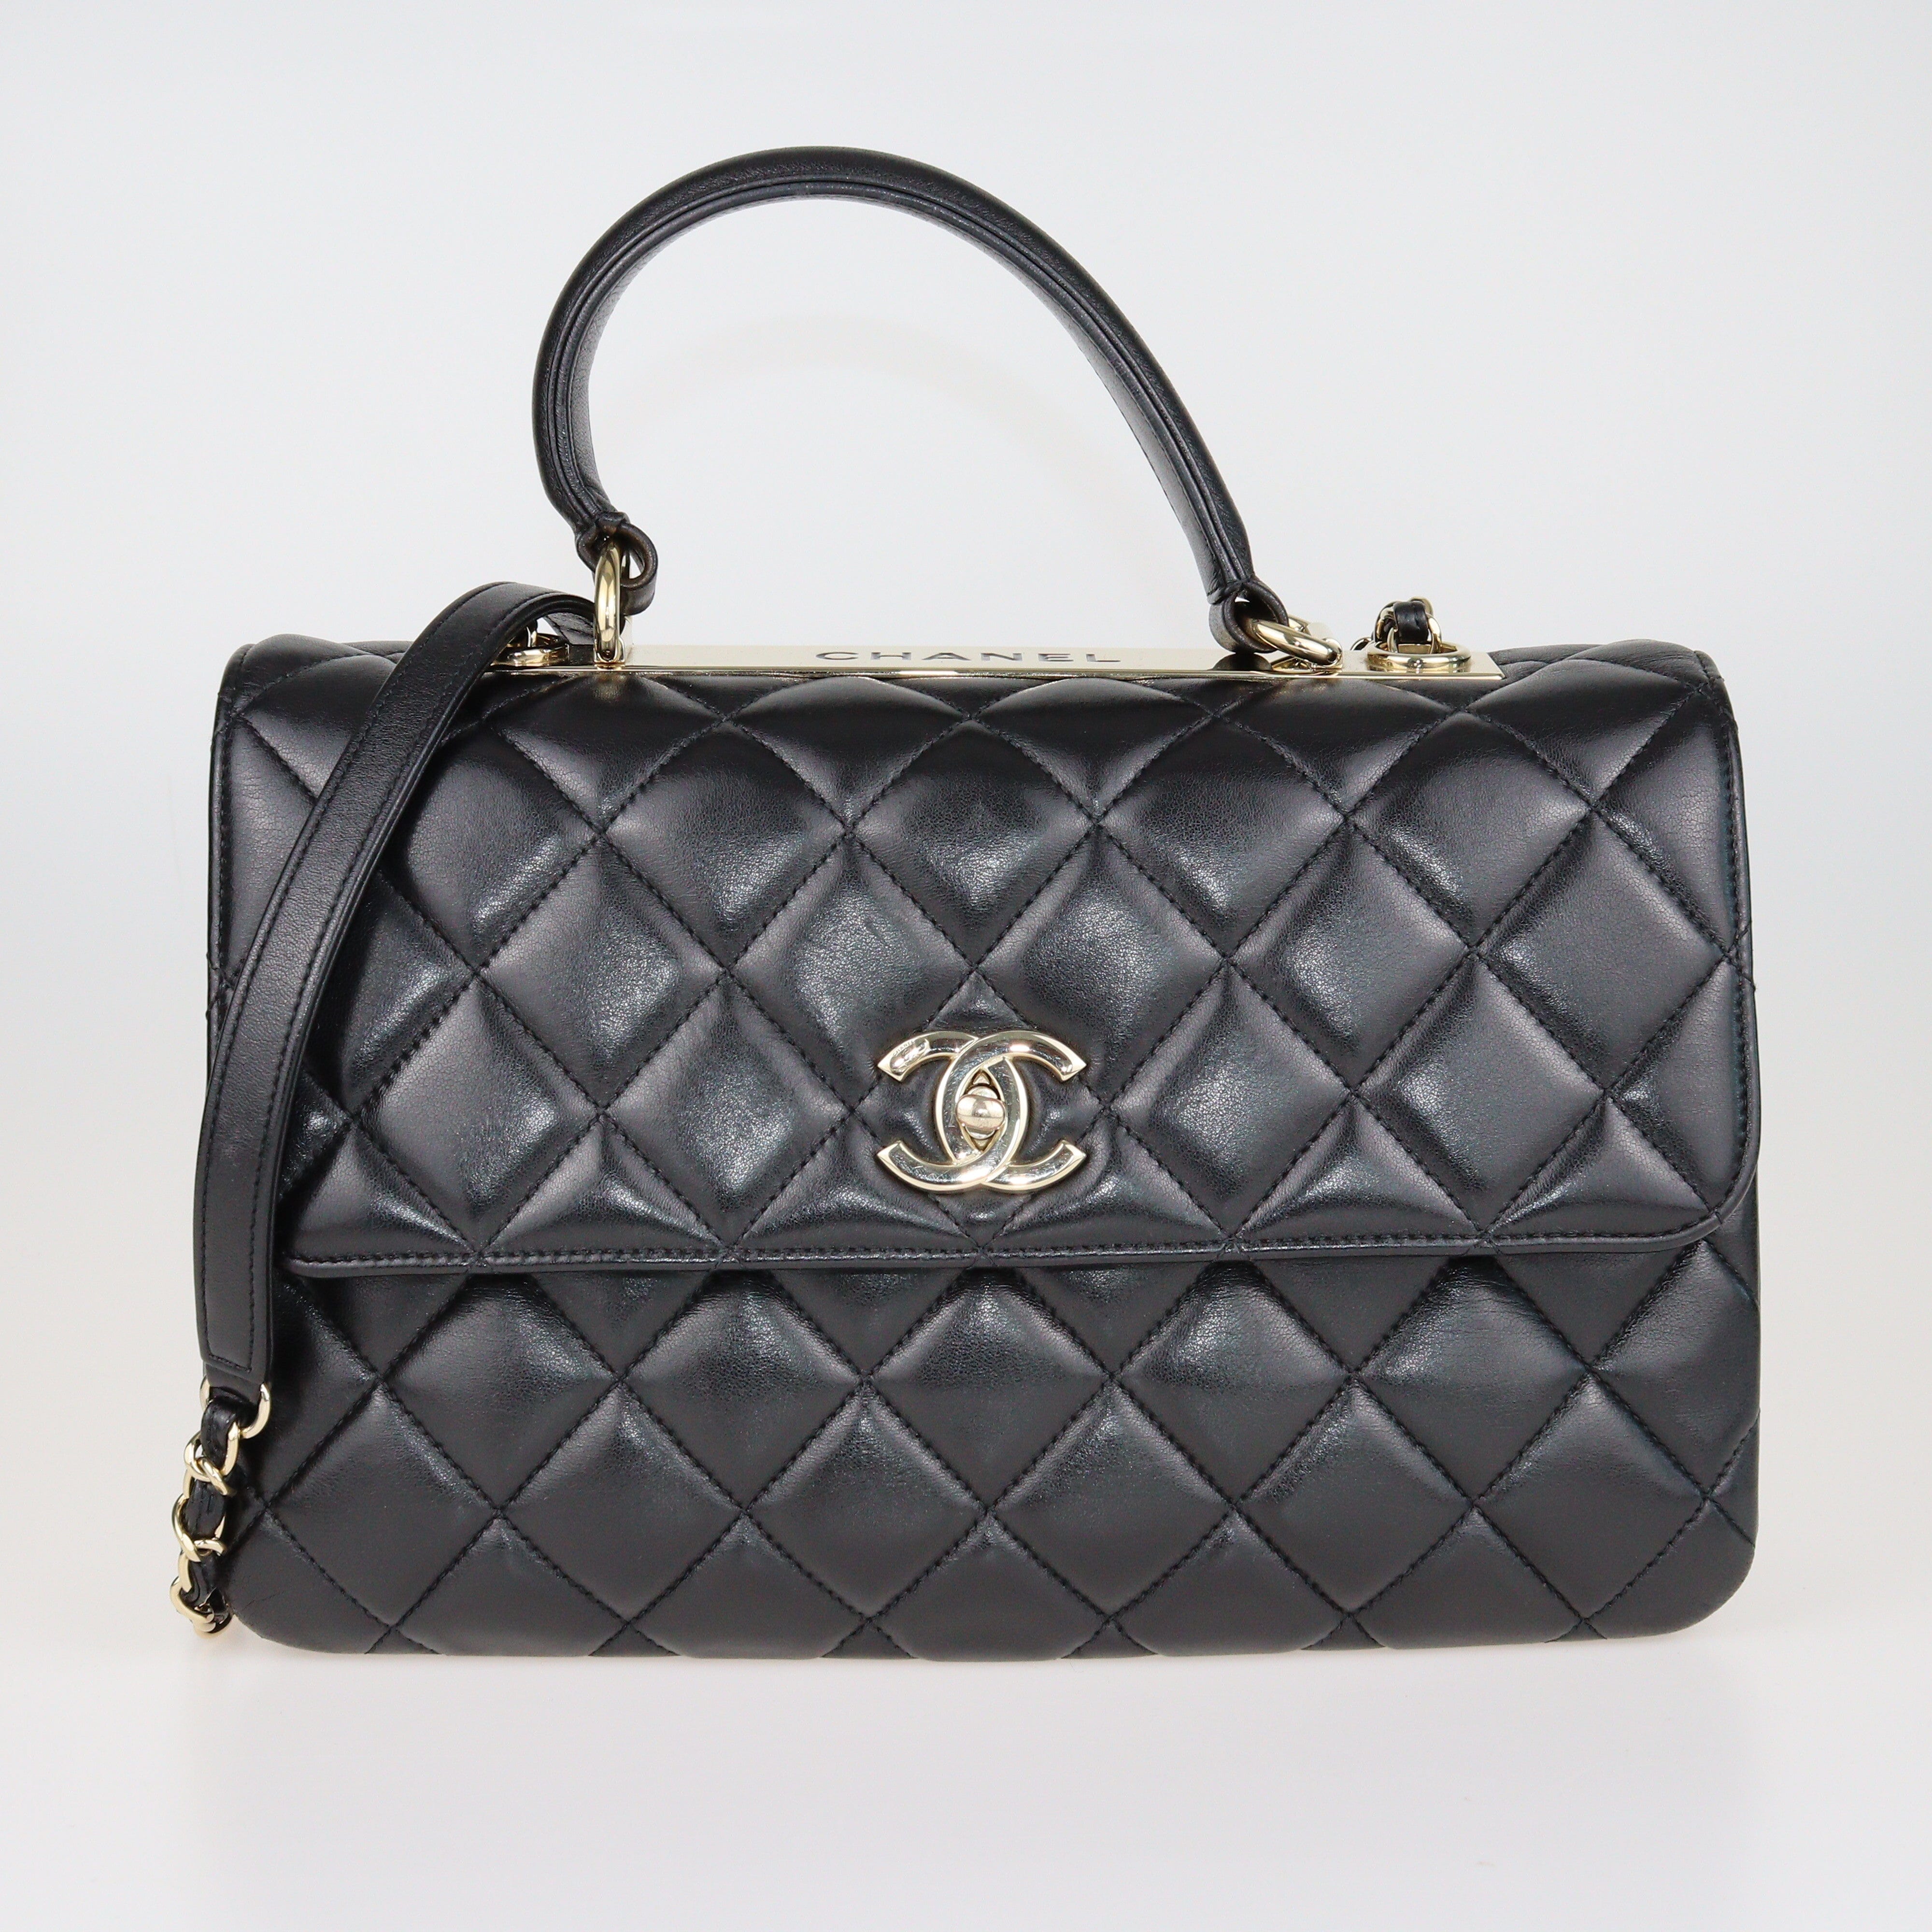 Black Trendy CC Medium Top Handie Bag Bags Chanel 